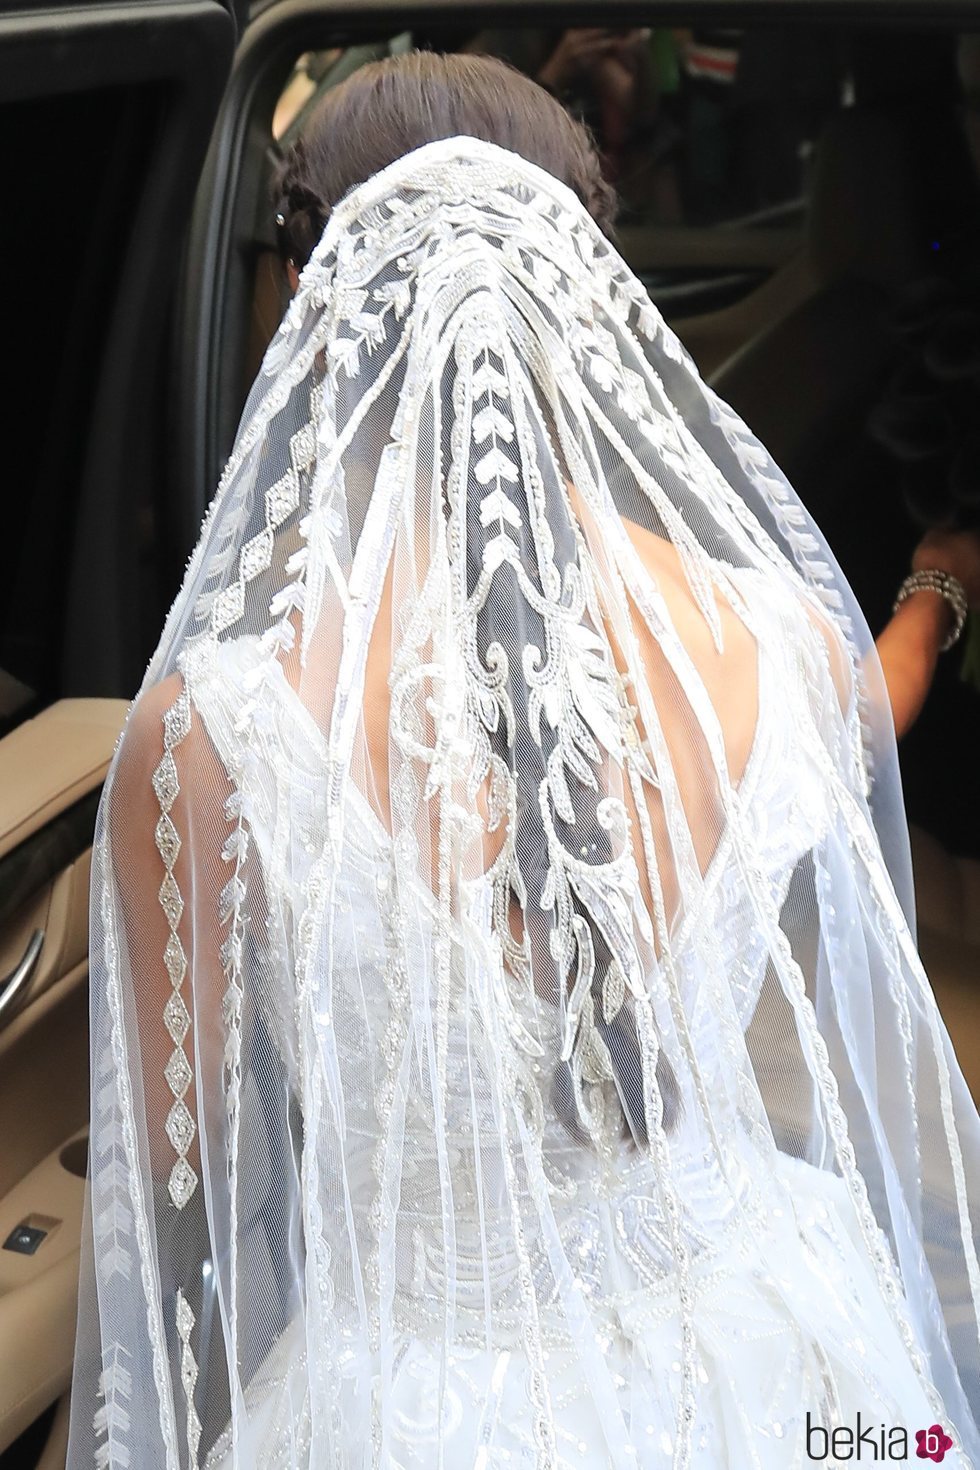 Velo del vestido de novia de Pilar Rubio en su boda con Sergio Ramos